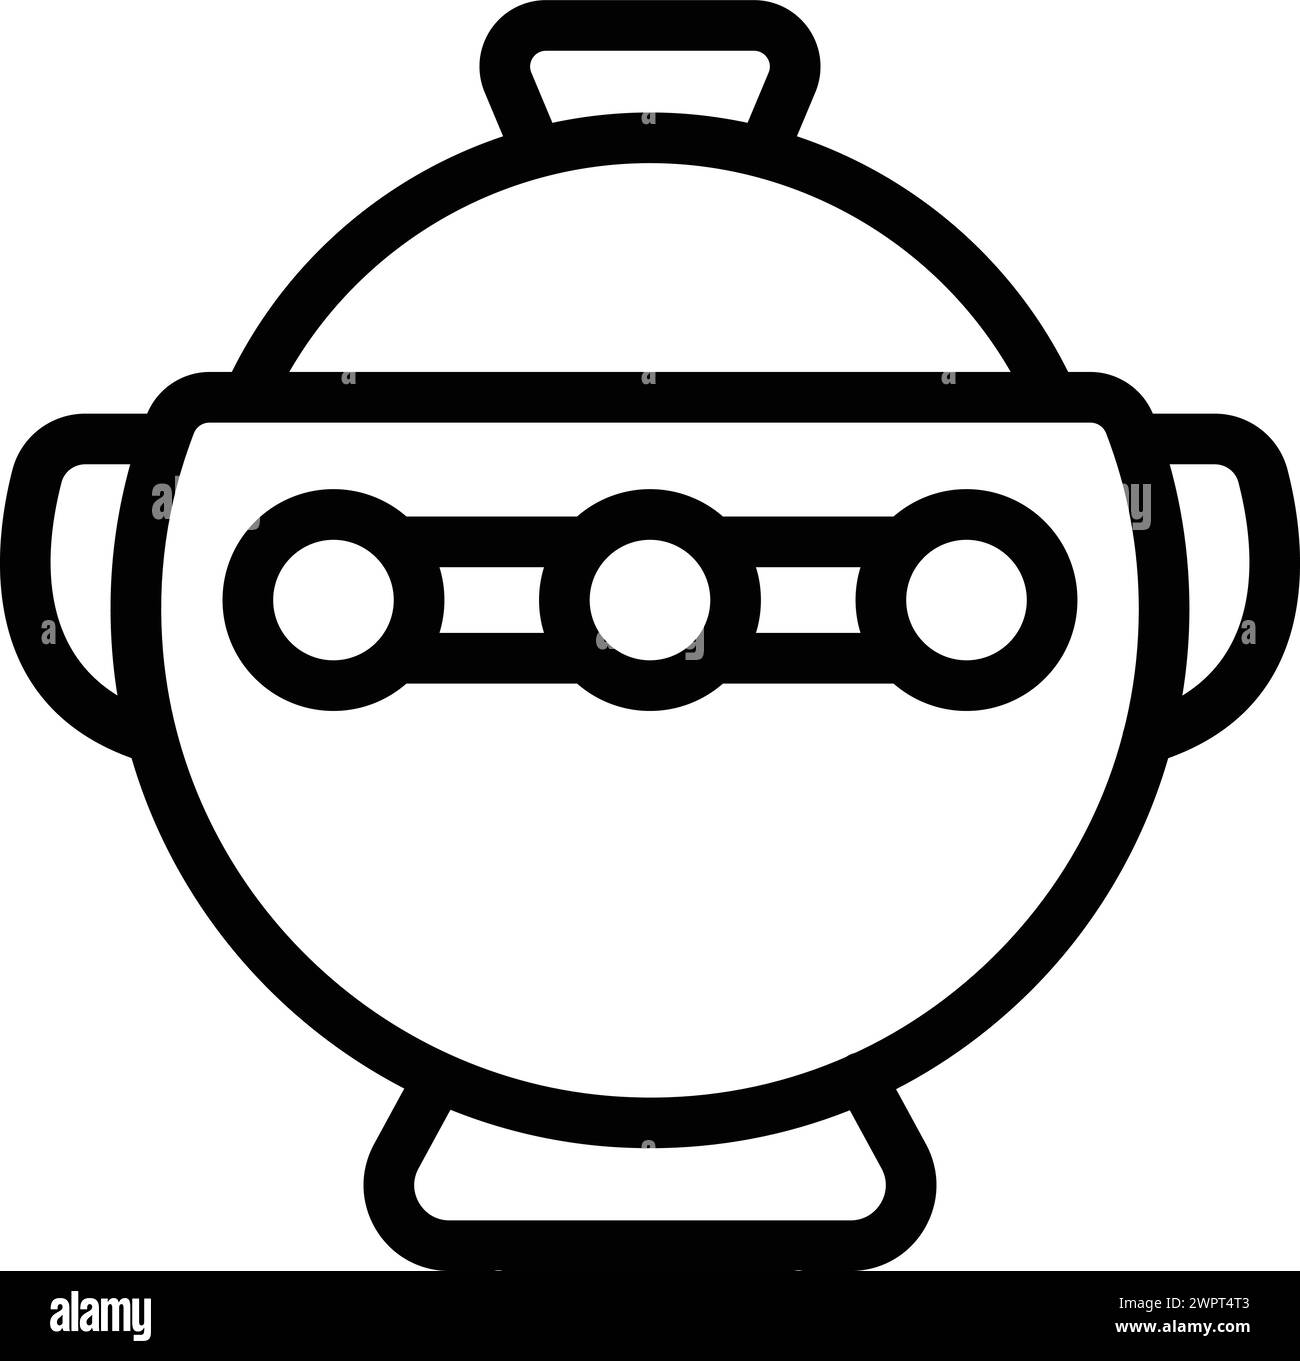 Vecteur de contour d'icône de marmite de cuisson. Ustensile de cuisson. Cuisine articles culinaires Illustration de Vecteur